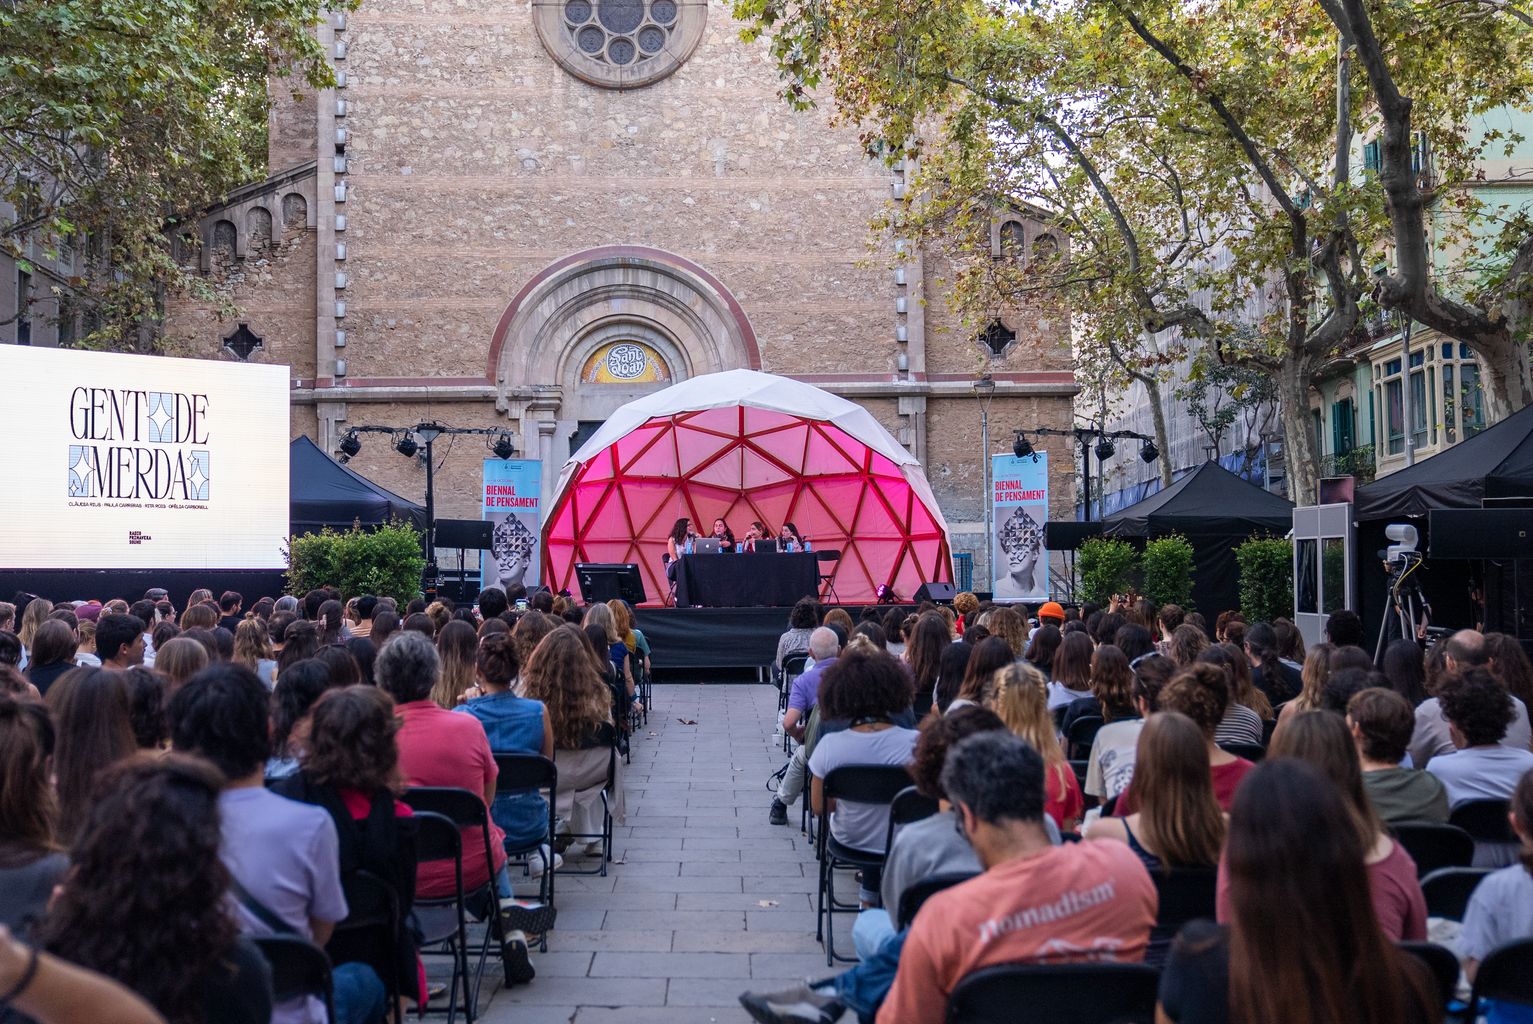 Plano general de la charla "Bienal. Vivir en Barcelona: Gente de mierda en directo", con Clàudia Rius, Paula Carreras, Rita Roig y Ofèlia Carbonell, en la plaza de la Virreina con el público asistente escuchando atentamente